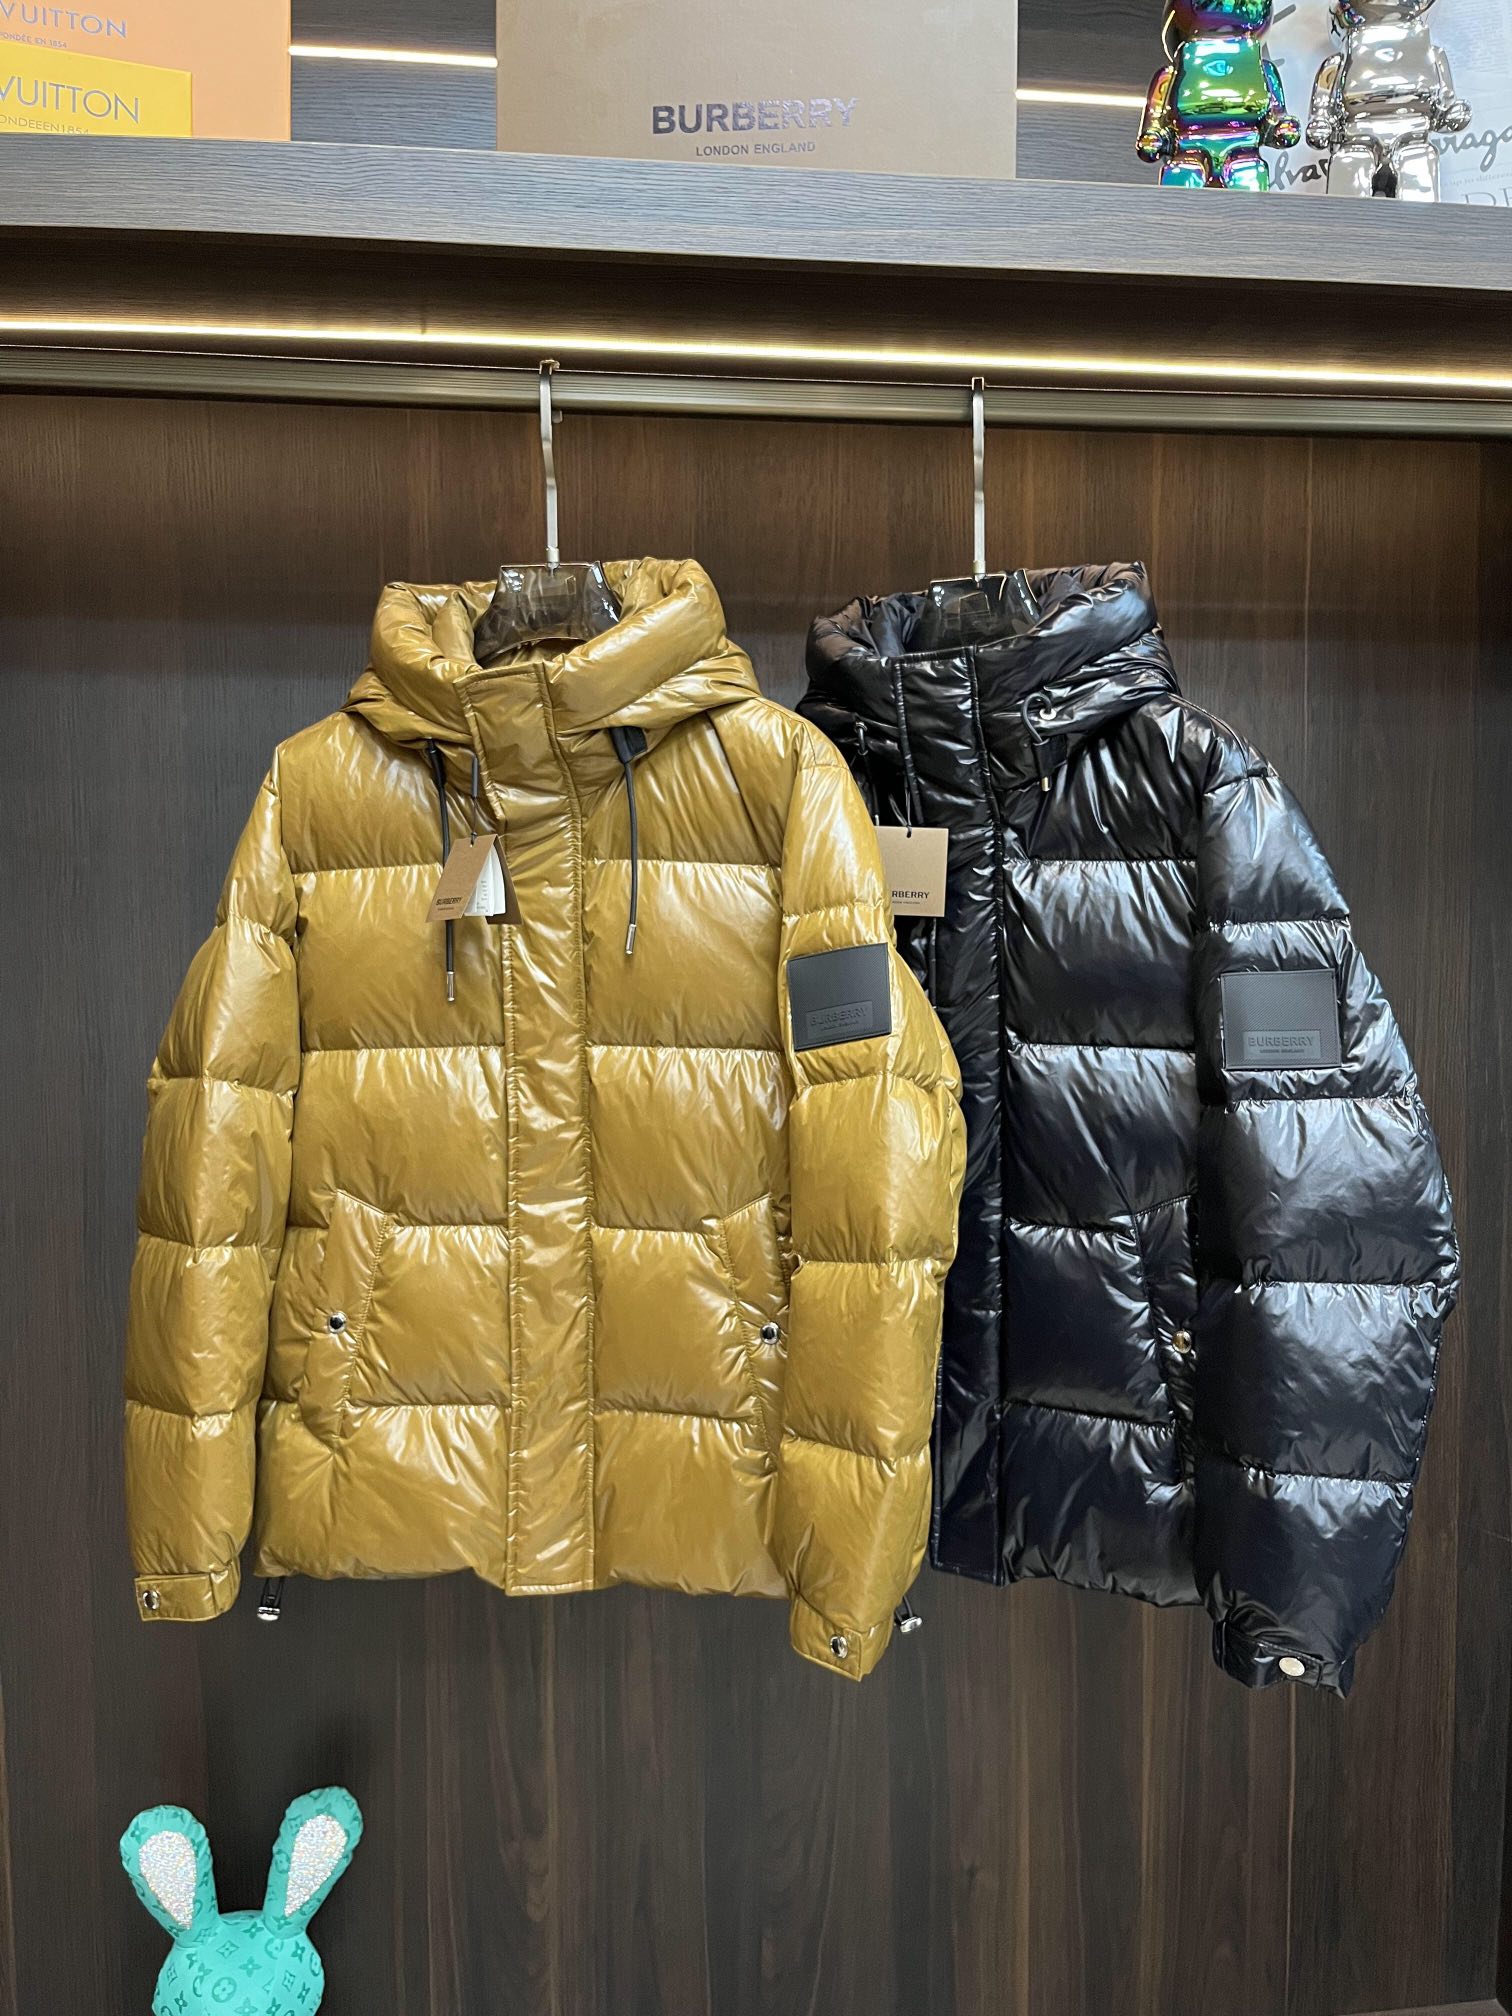 Wholesale Replica Gucci Jackets | Fake Replica Gucci Jackets | Cheap ...